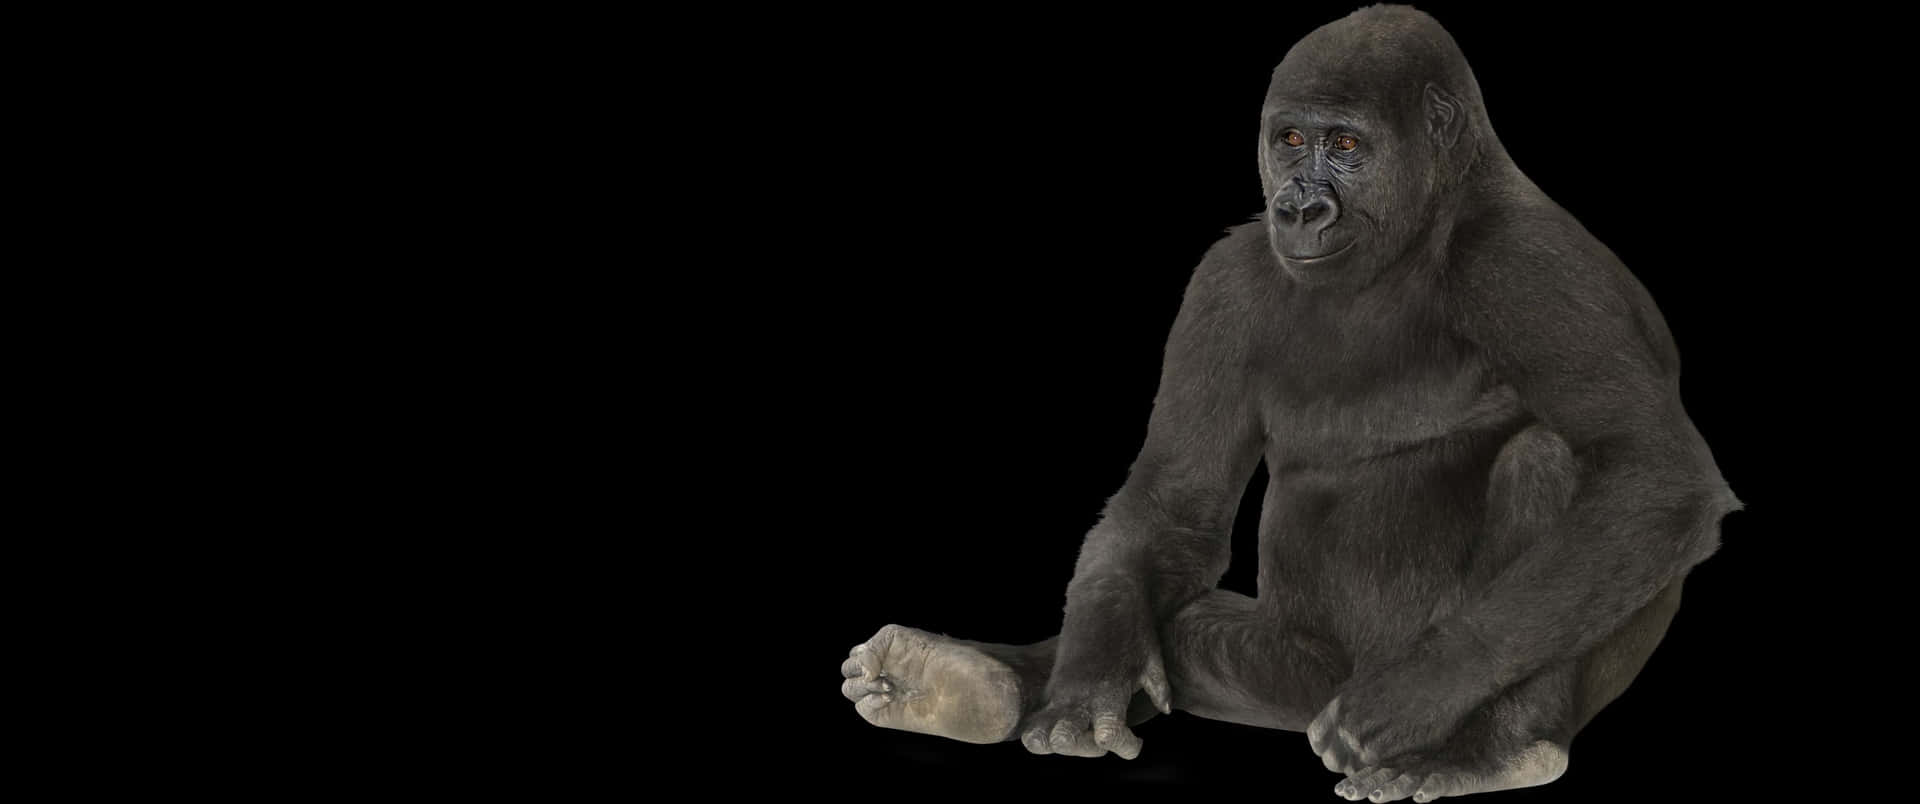 Fundode Tela Do Gorila Sentado No Chão Com Resolução De 3440x1440p.